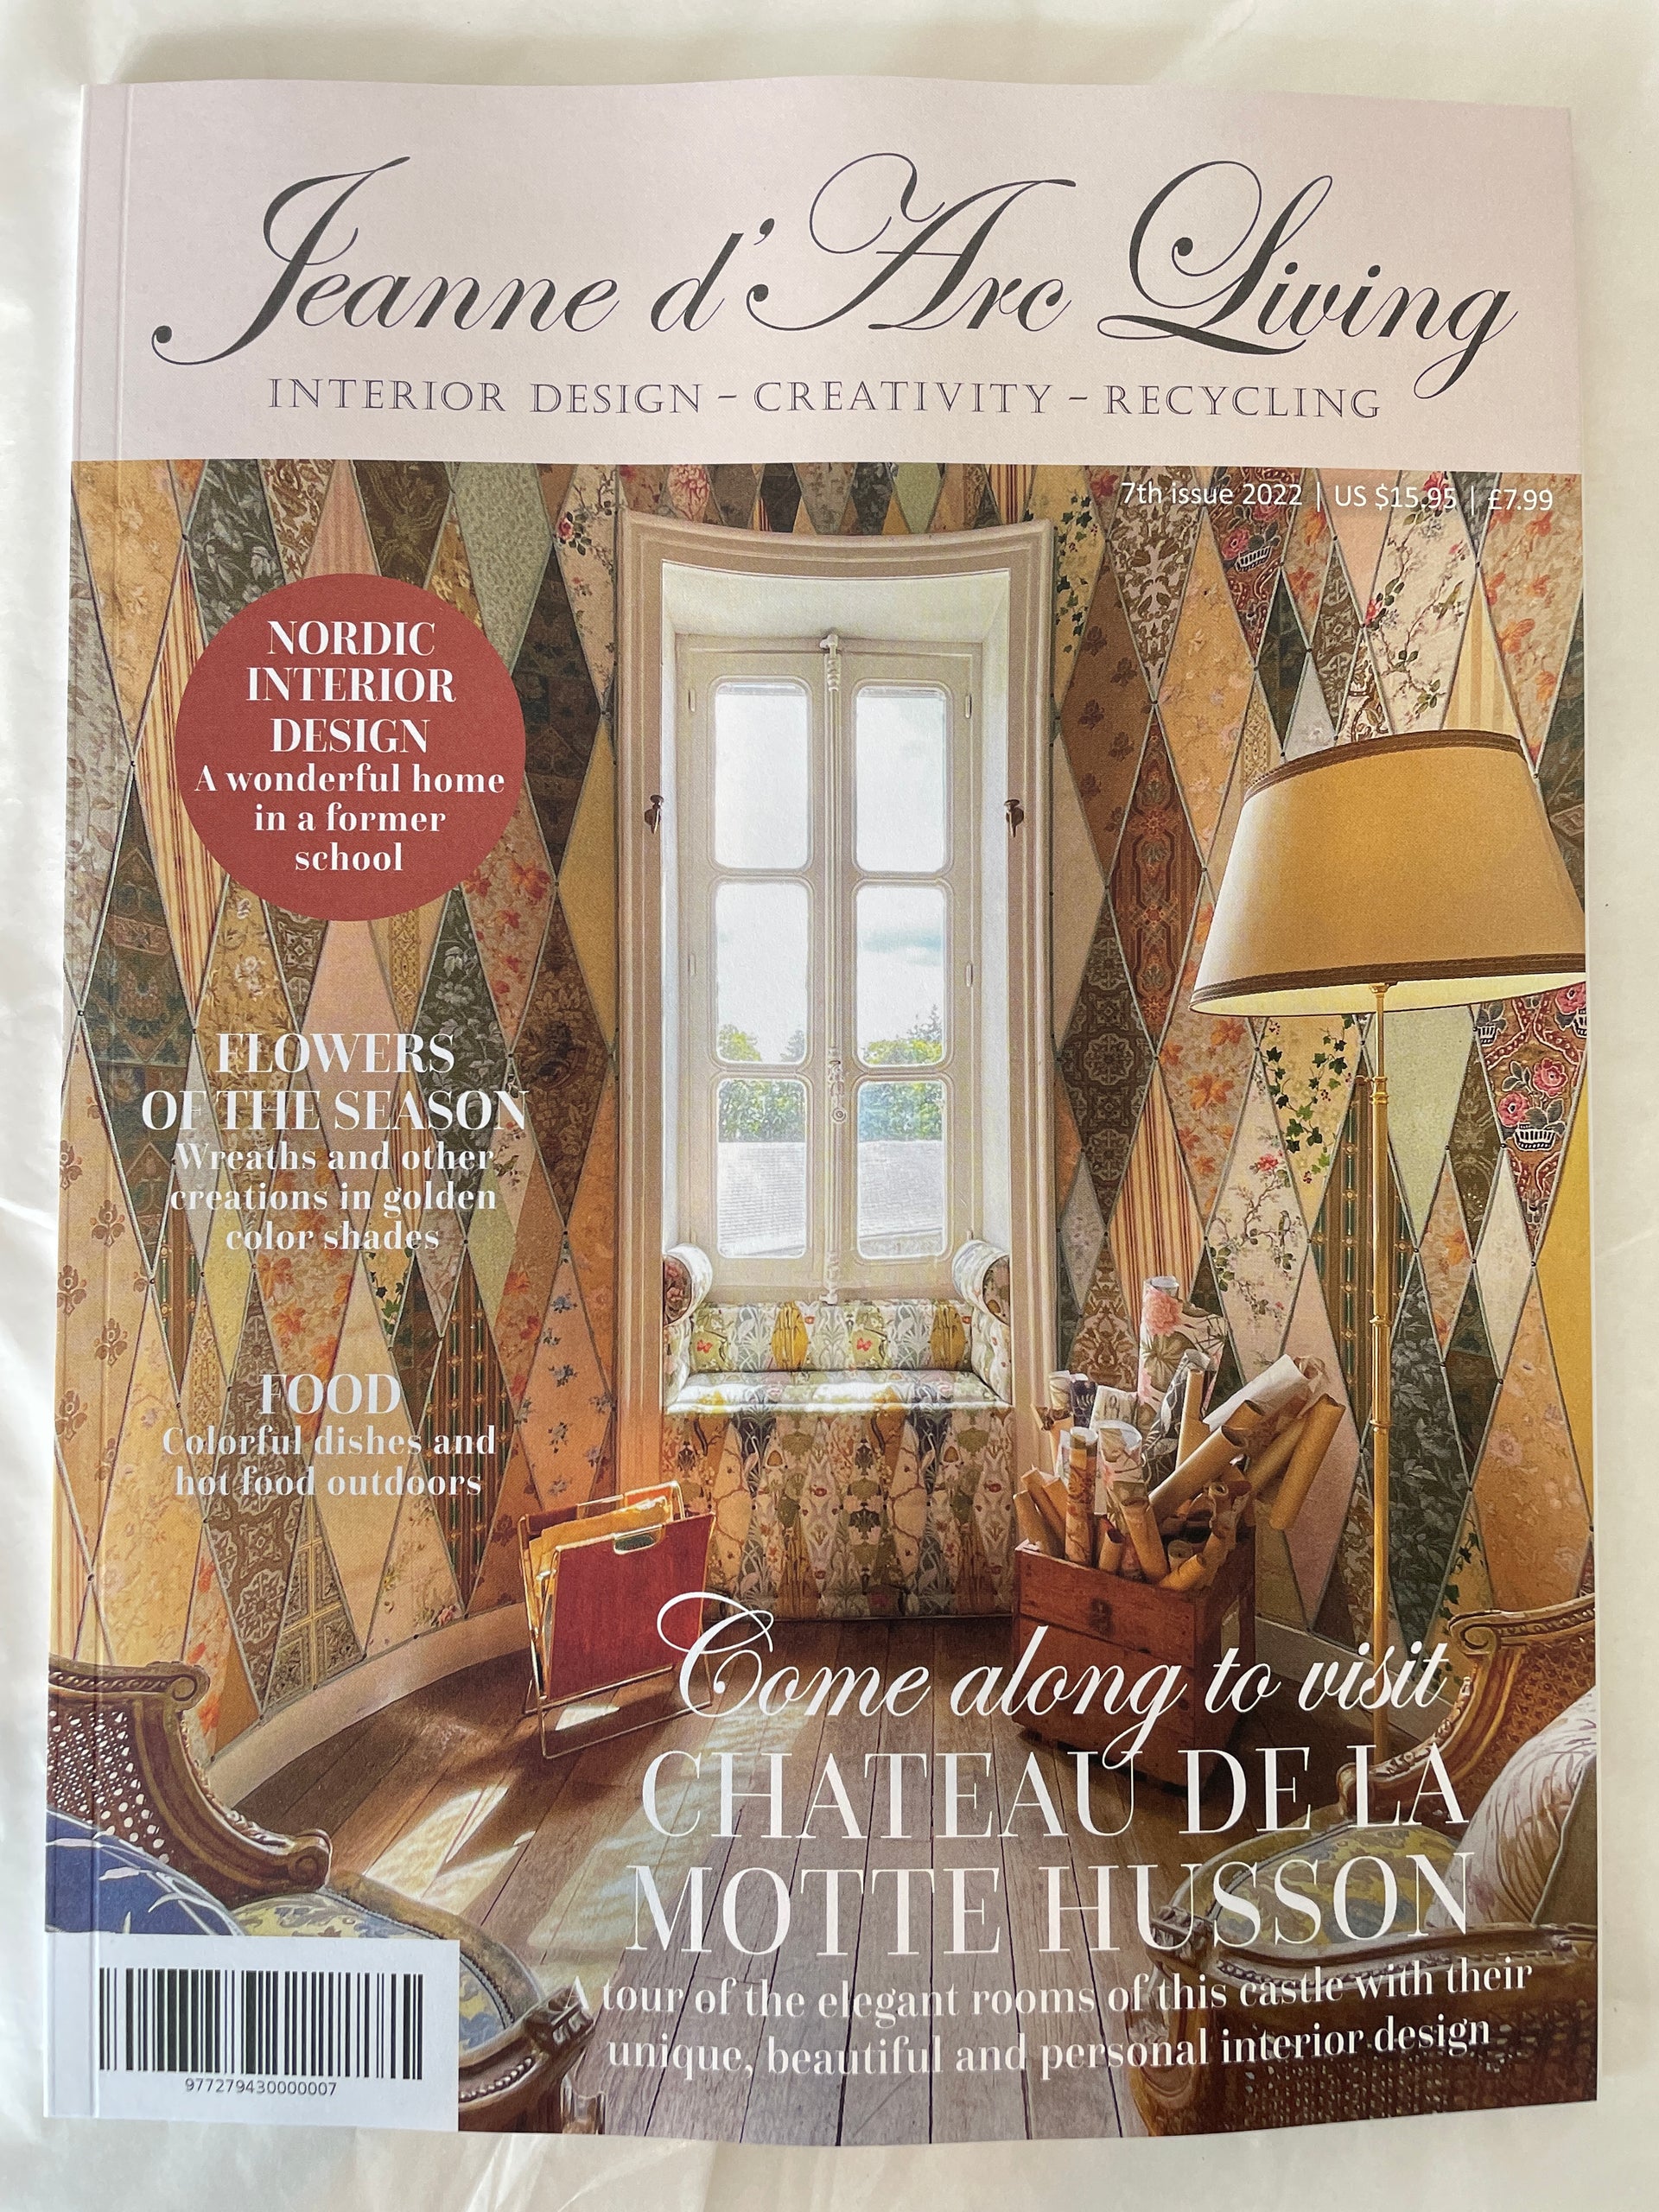 Jeanne d'Arc Living Magazine - 2022 Vol. 7 Chateau de la Motte Husson